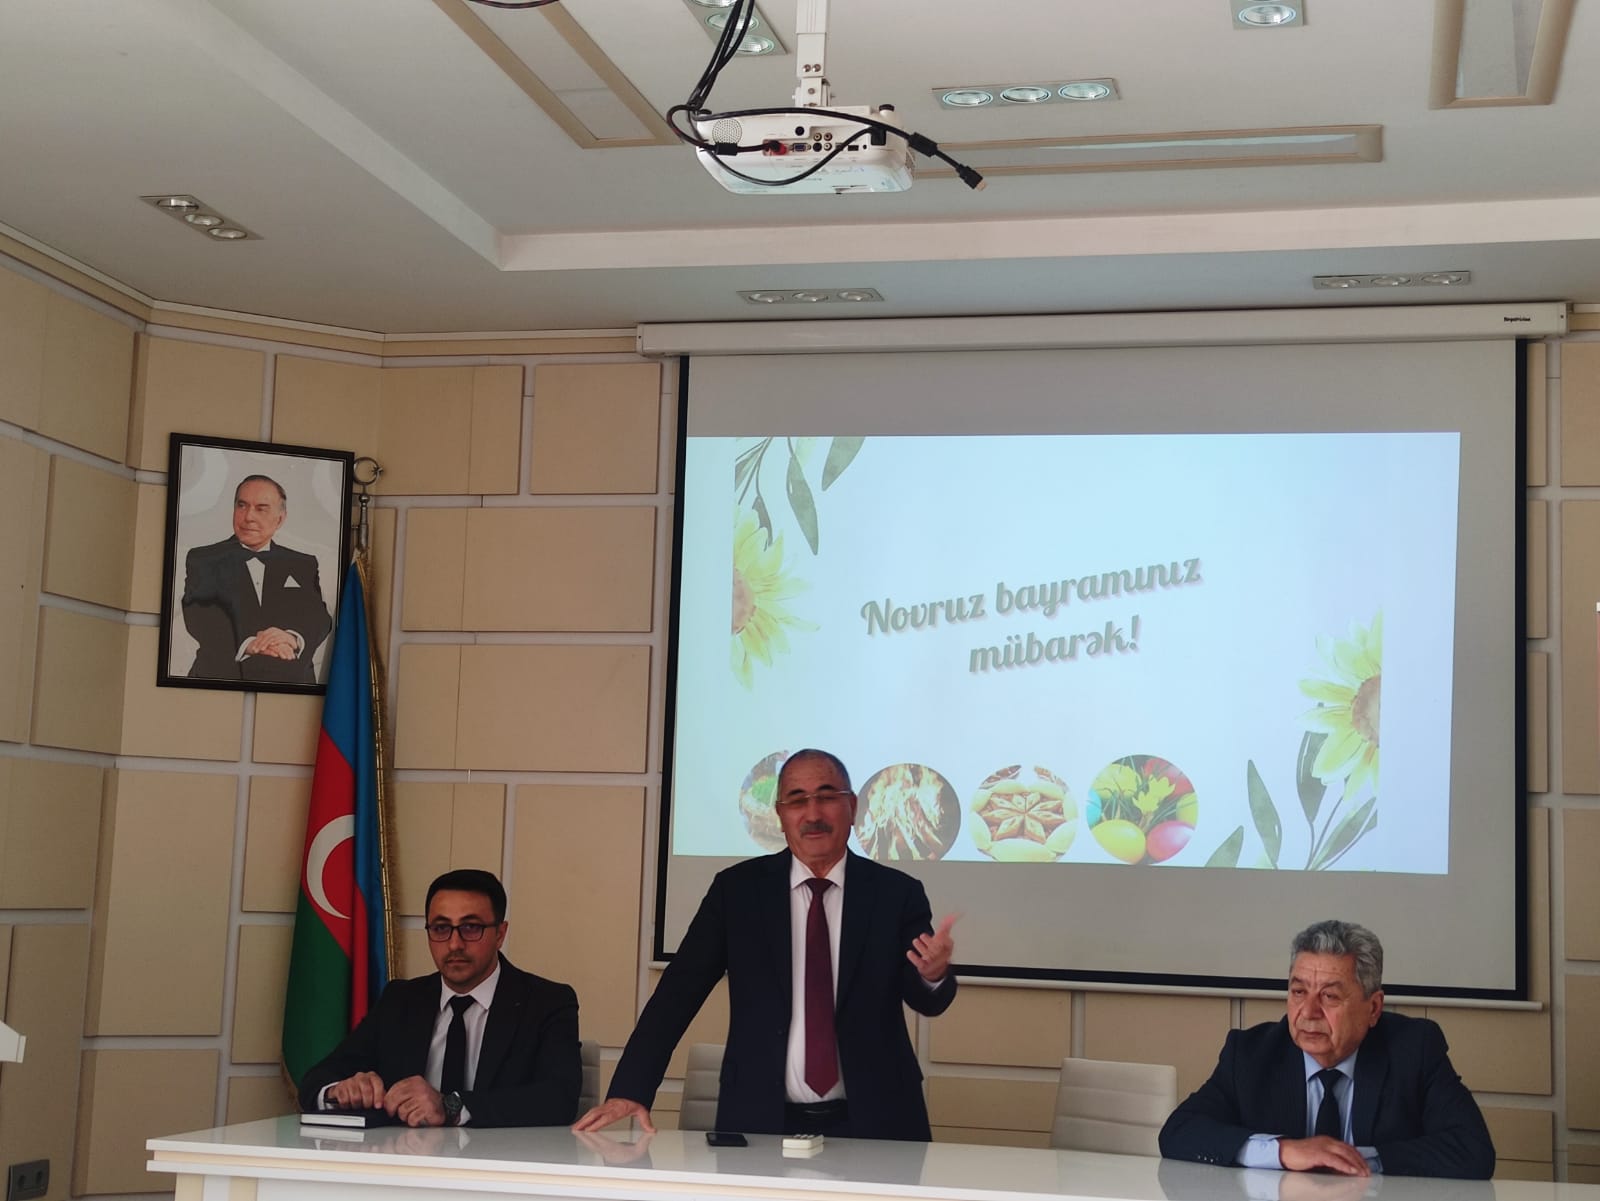 Институт почвоведения и агрохимии Министерство науки и образования Азербайджанской Республики провел мероприятие, посвященное празднику Новруз